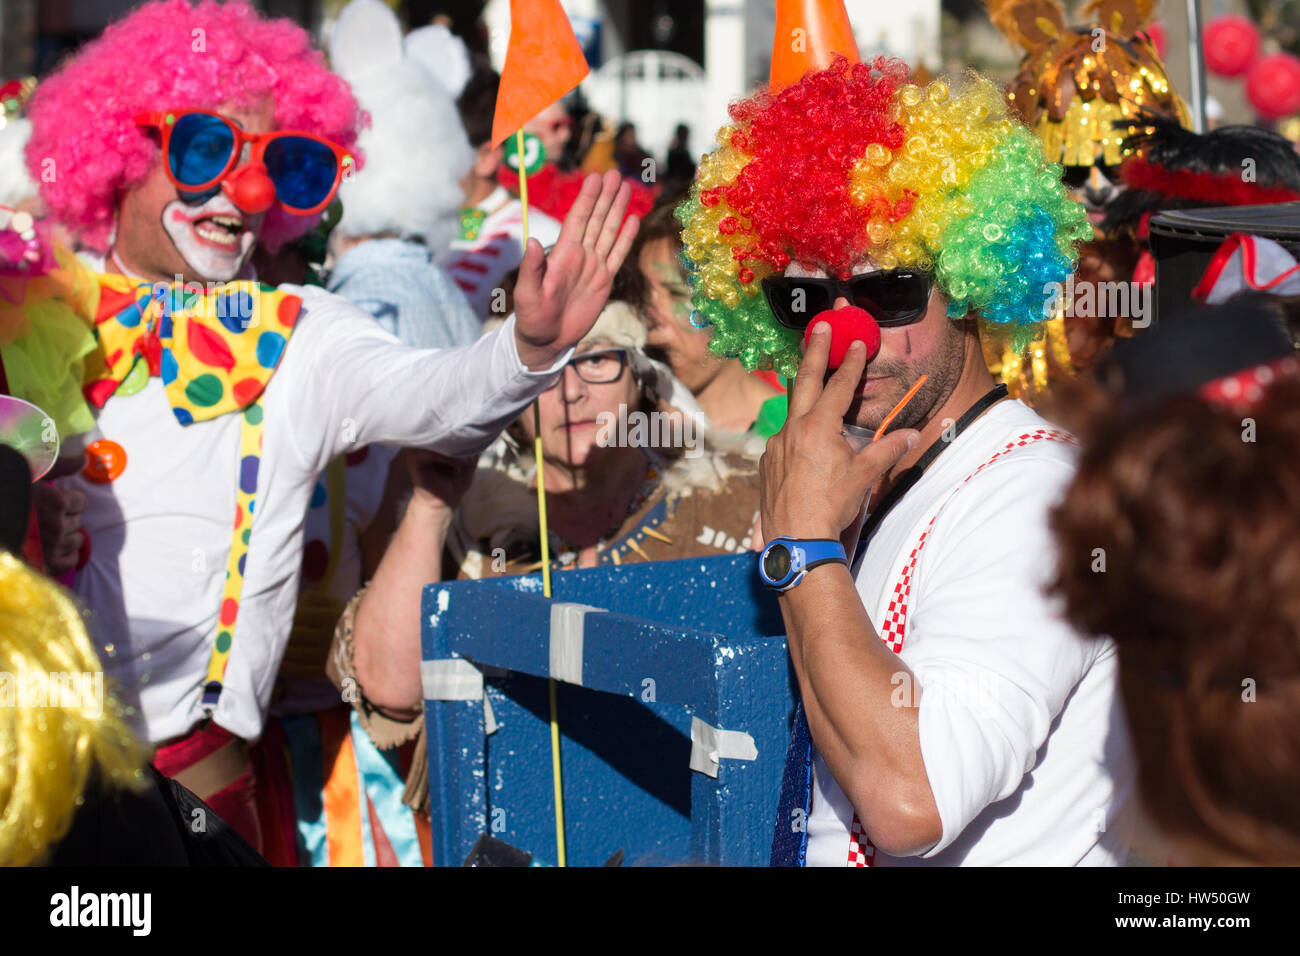 Tenerife, España - Marzo 04, 2017: Los Payasos / personas en disfraces de payaso celebrar el Carnaval (Carnaval de Santa Cruz de Tenerife). Foto de stock